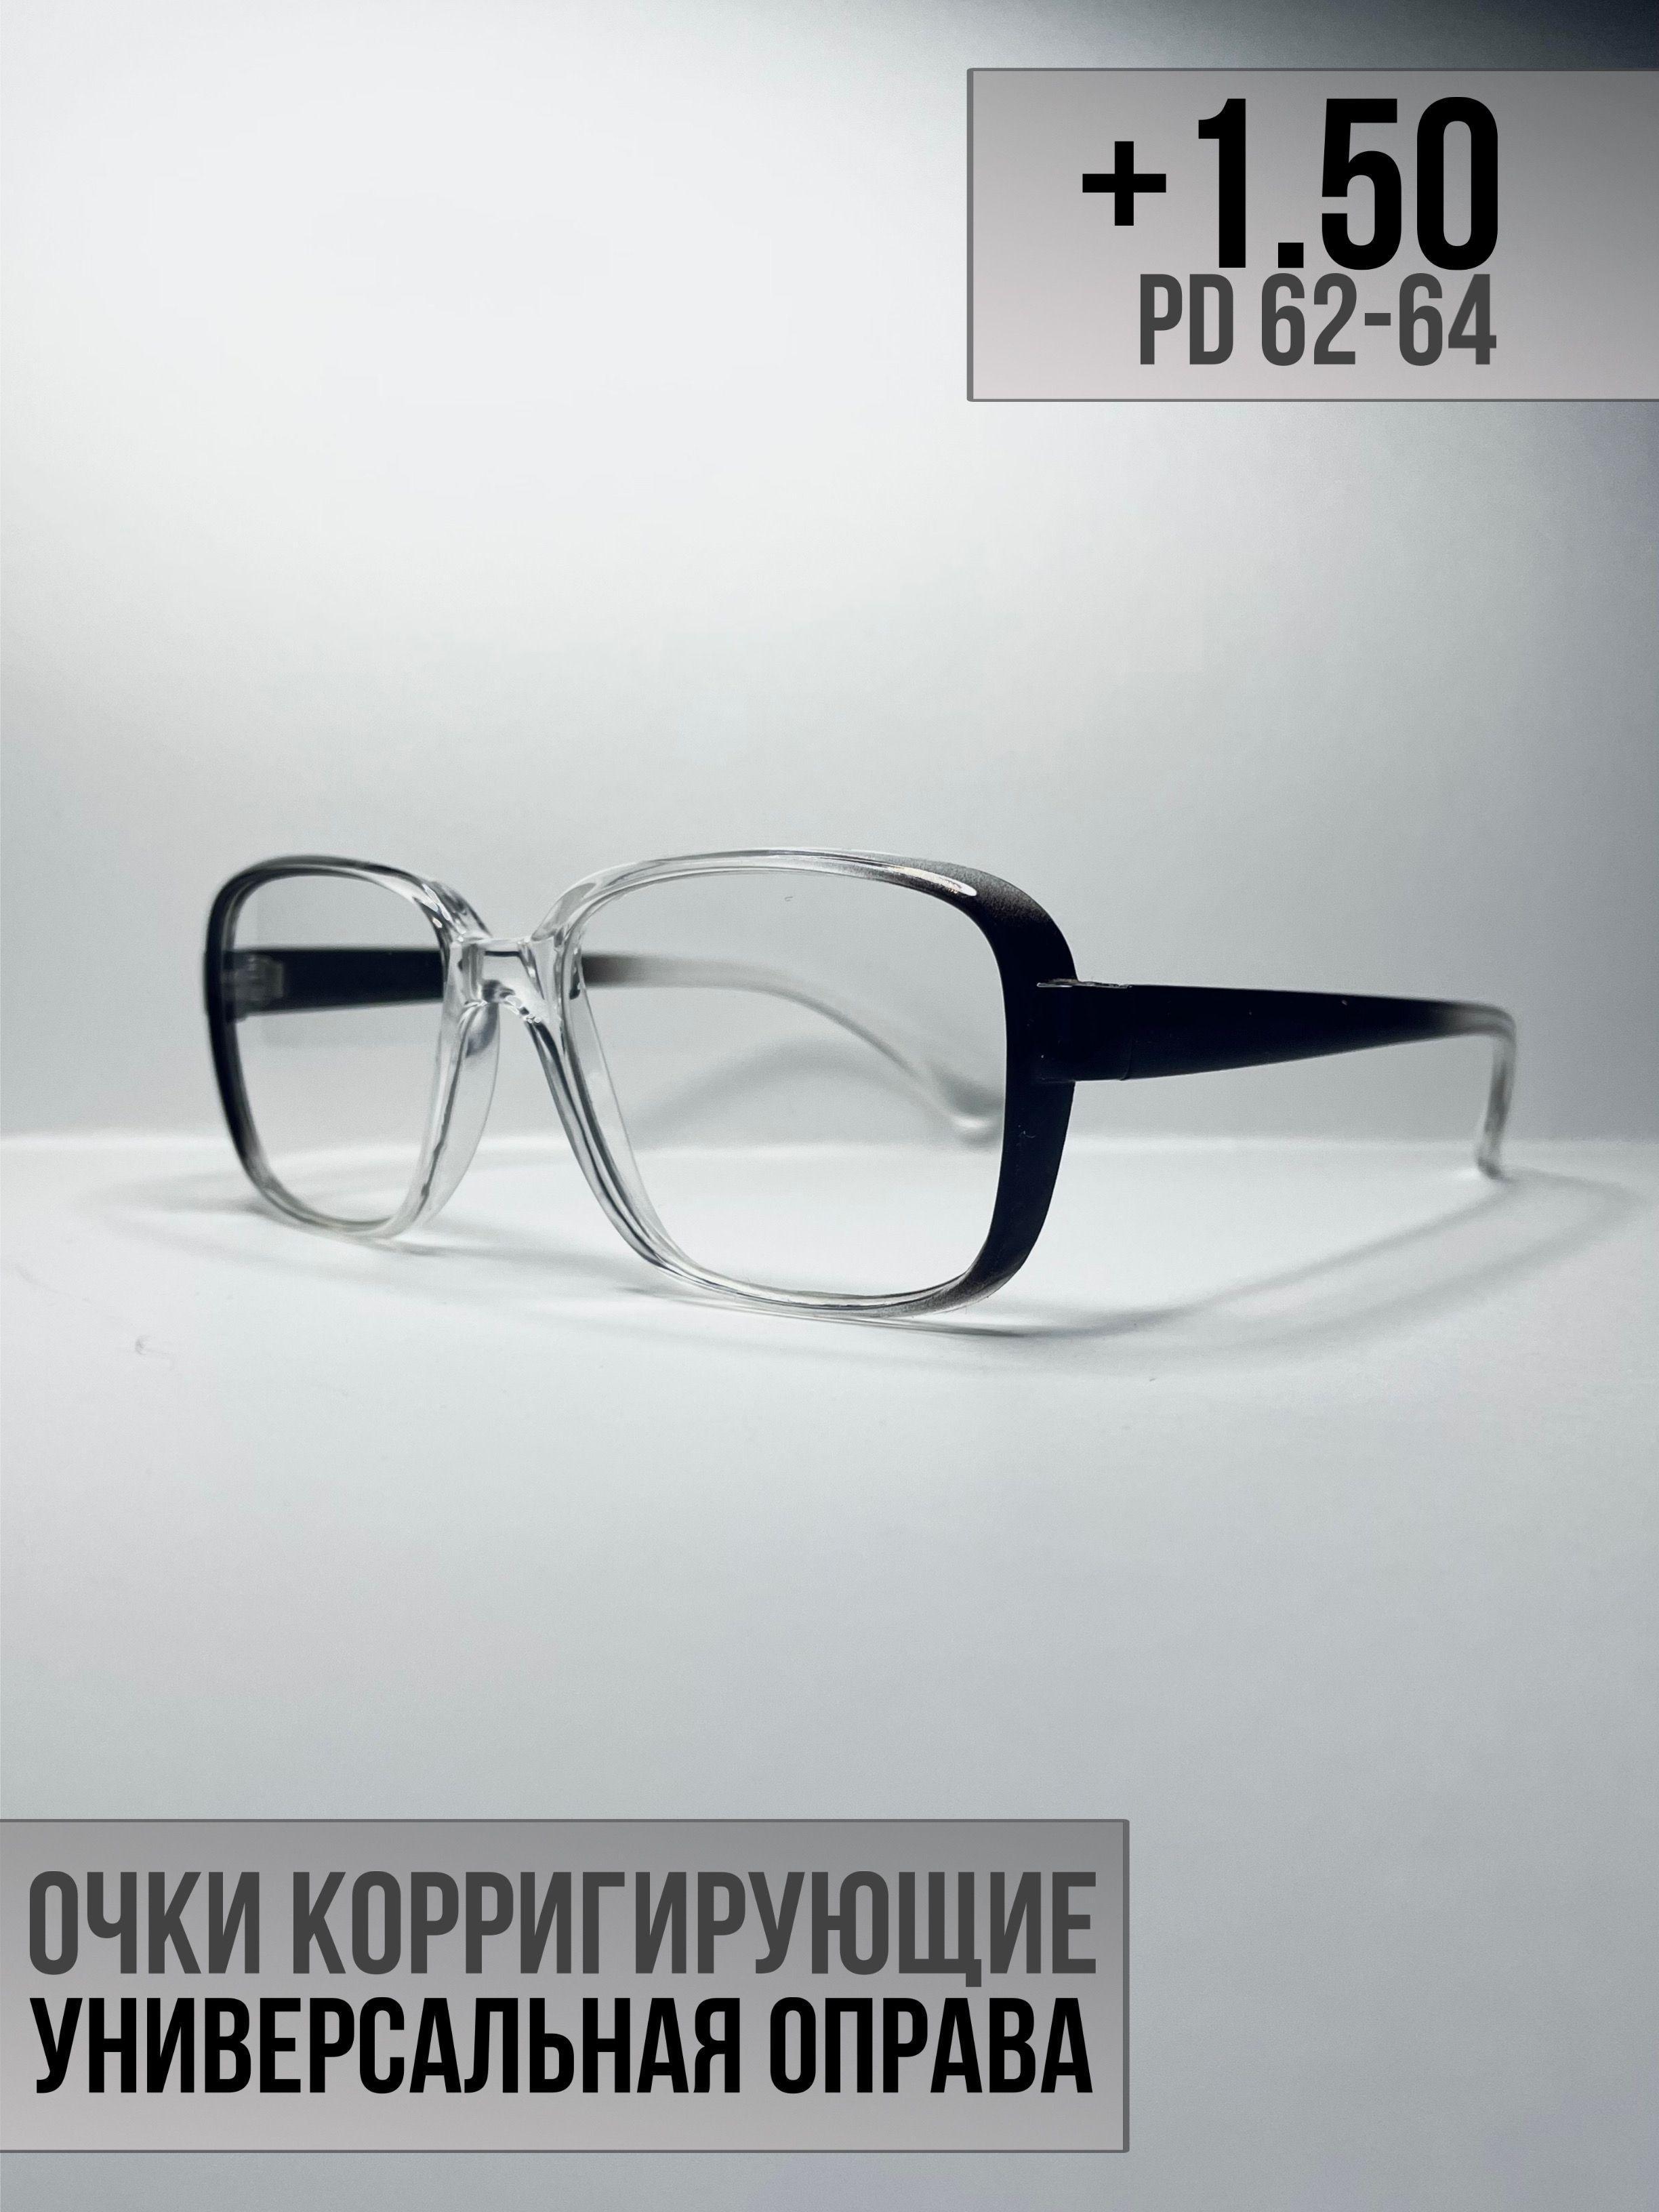 Готовые очки для зрения +1.50 PD62-64. Очки для чтения, корригирующие очки, очки плюс, пластиковые очки, дедушки, бабушки, очки с диоптриями, очки для зрения мужские, очки для зрения женские